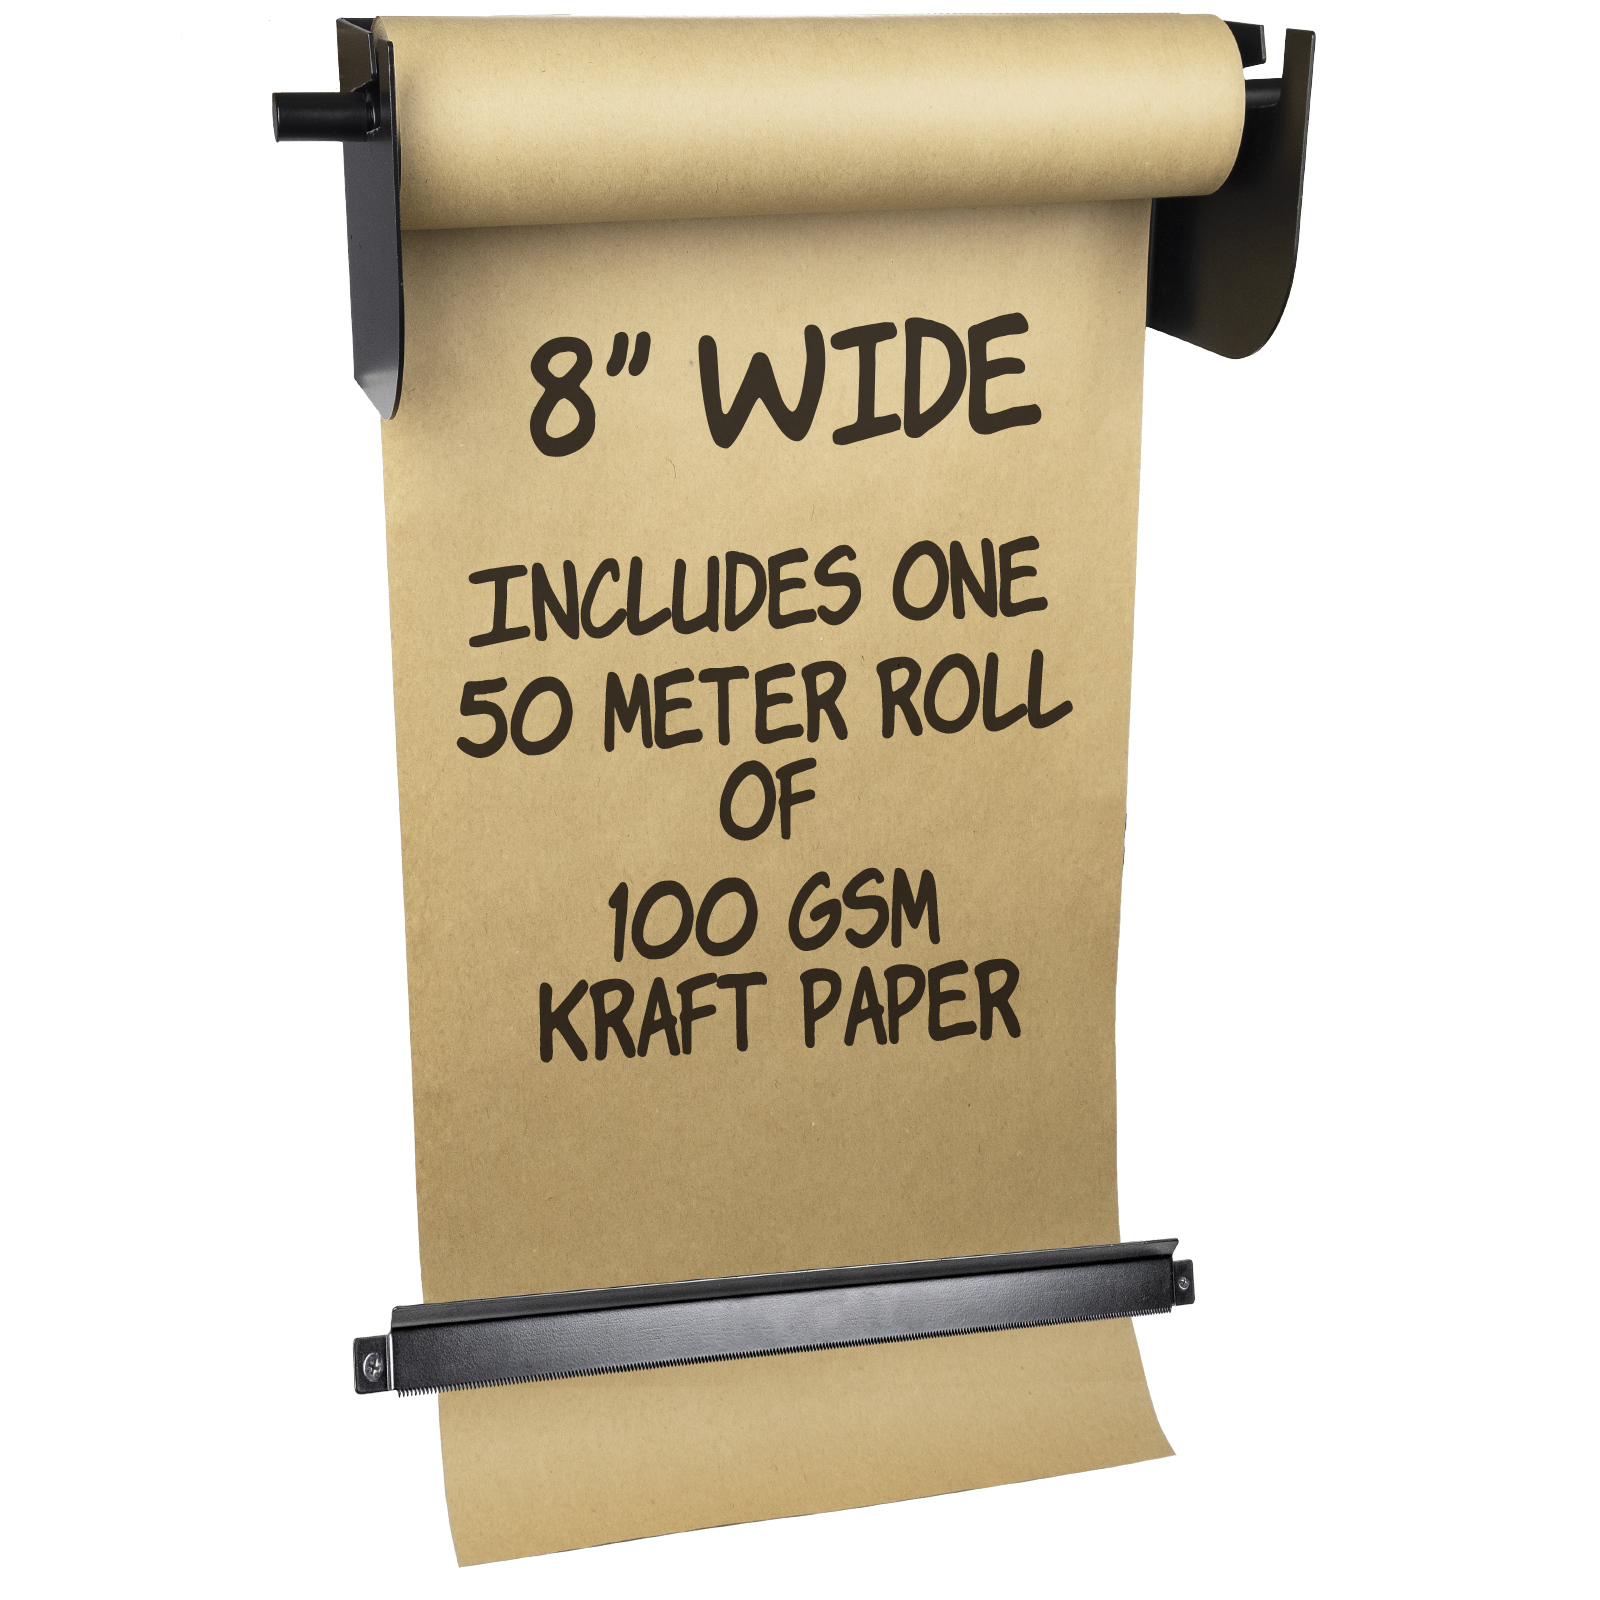 Wall Mounted Kraft Paper Dispenser & Cutter: with Kraft Paper Roll (8 Wide)